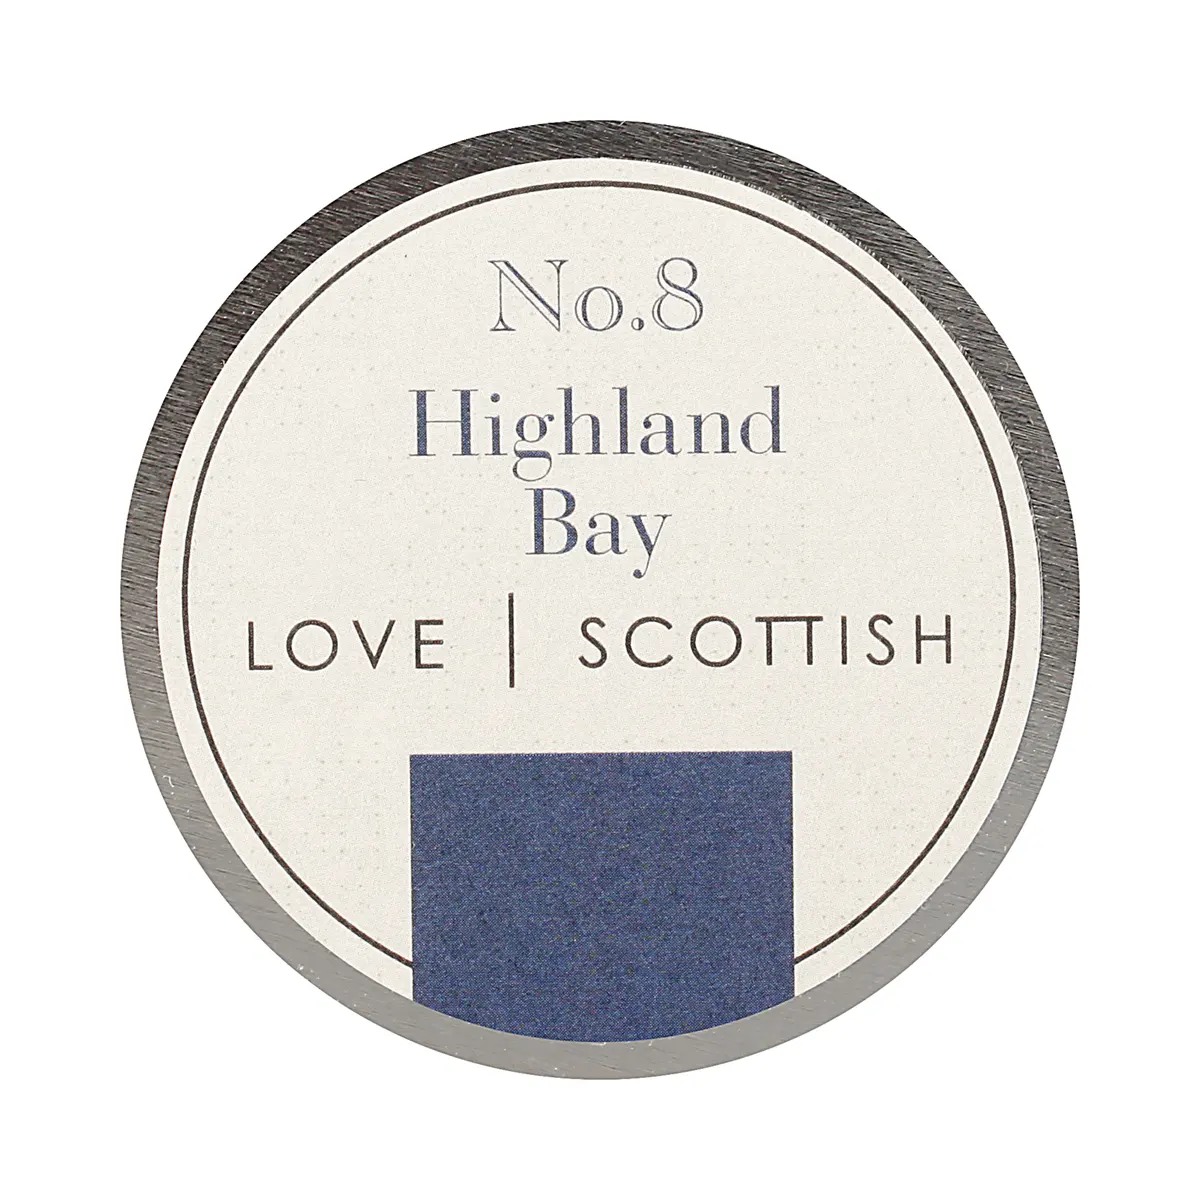 Love Scottish Travel Tin - Highland Bay - handgefertigte Duftkerze aus Kokoswachs